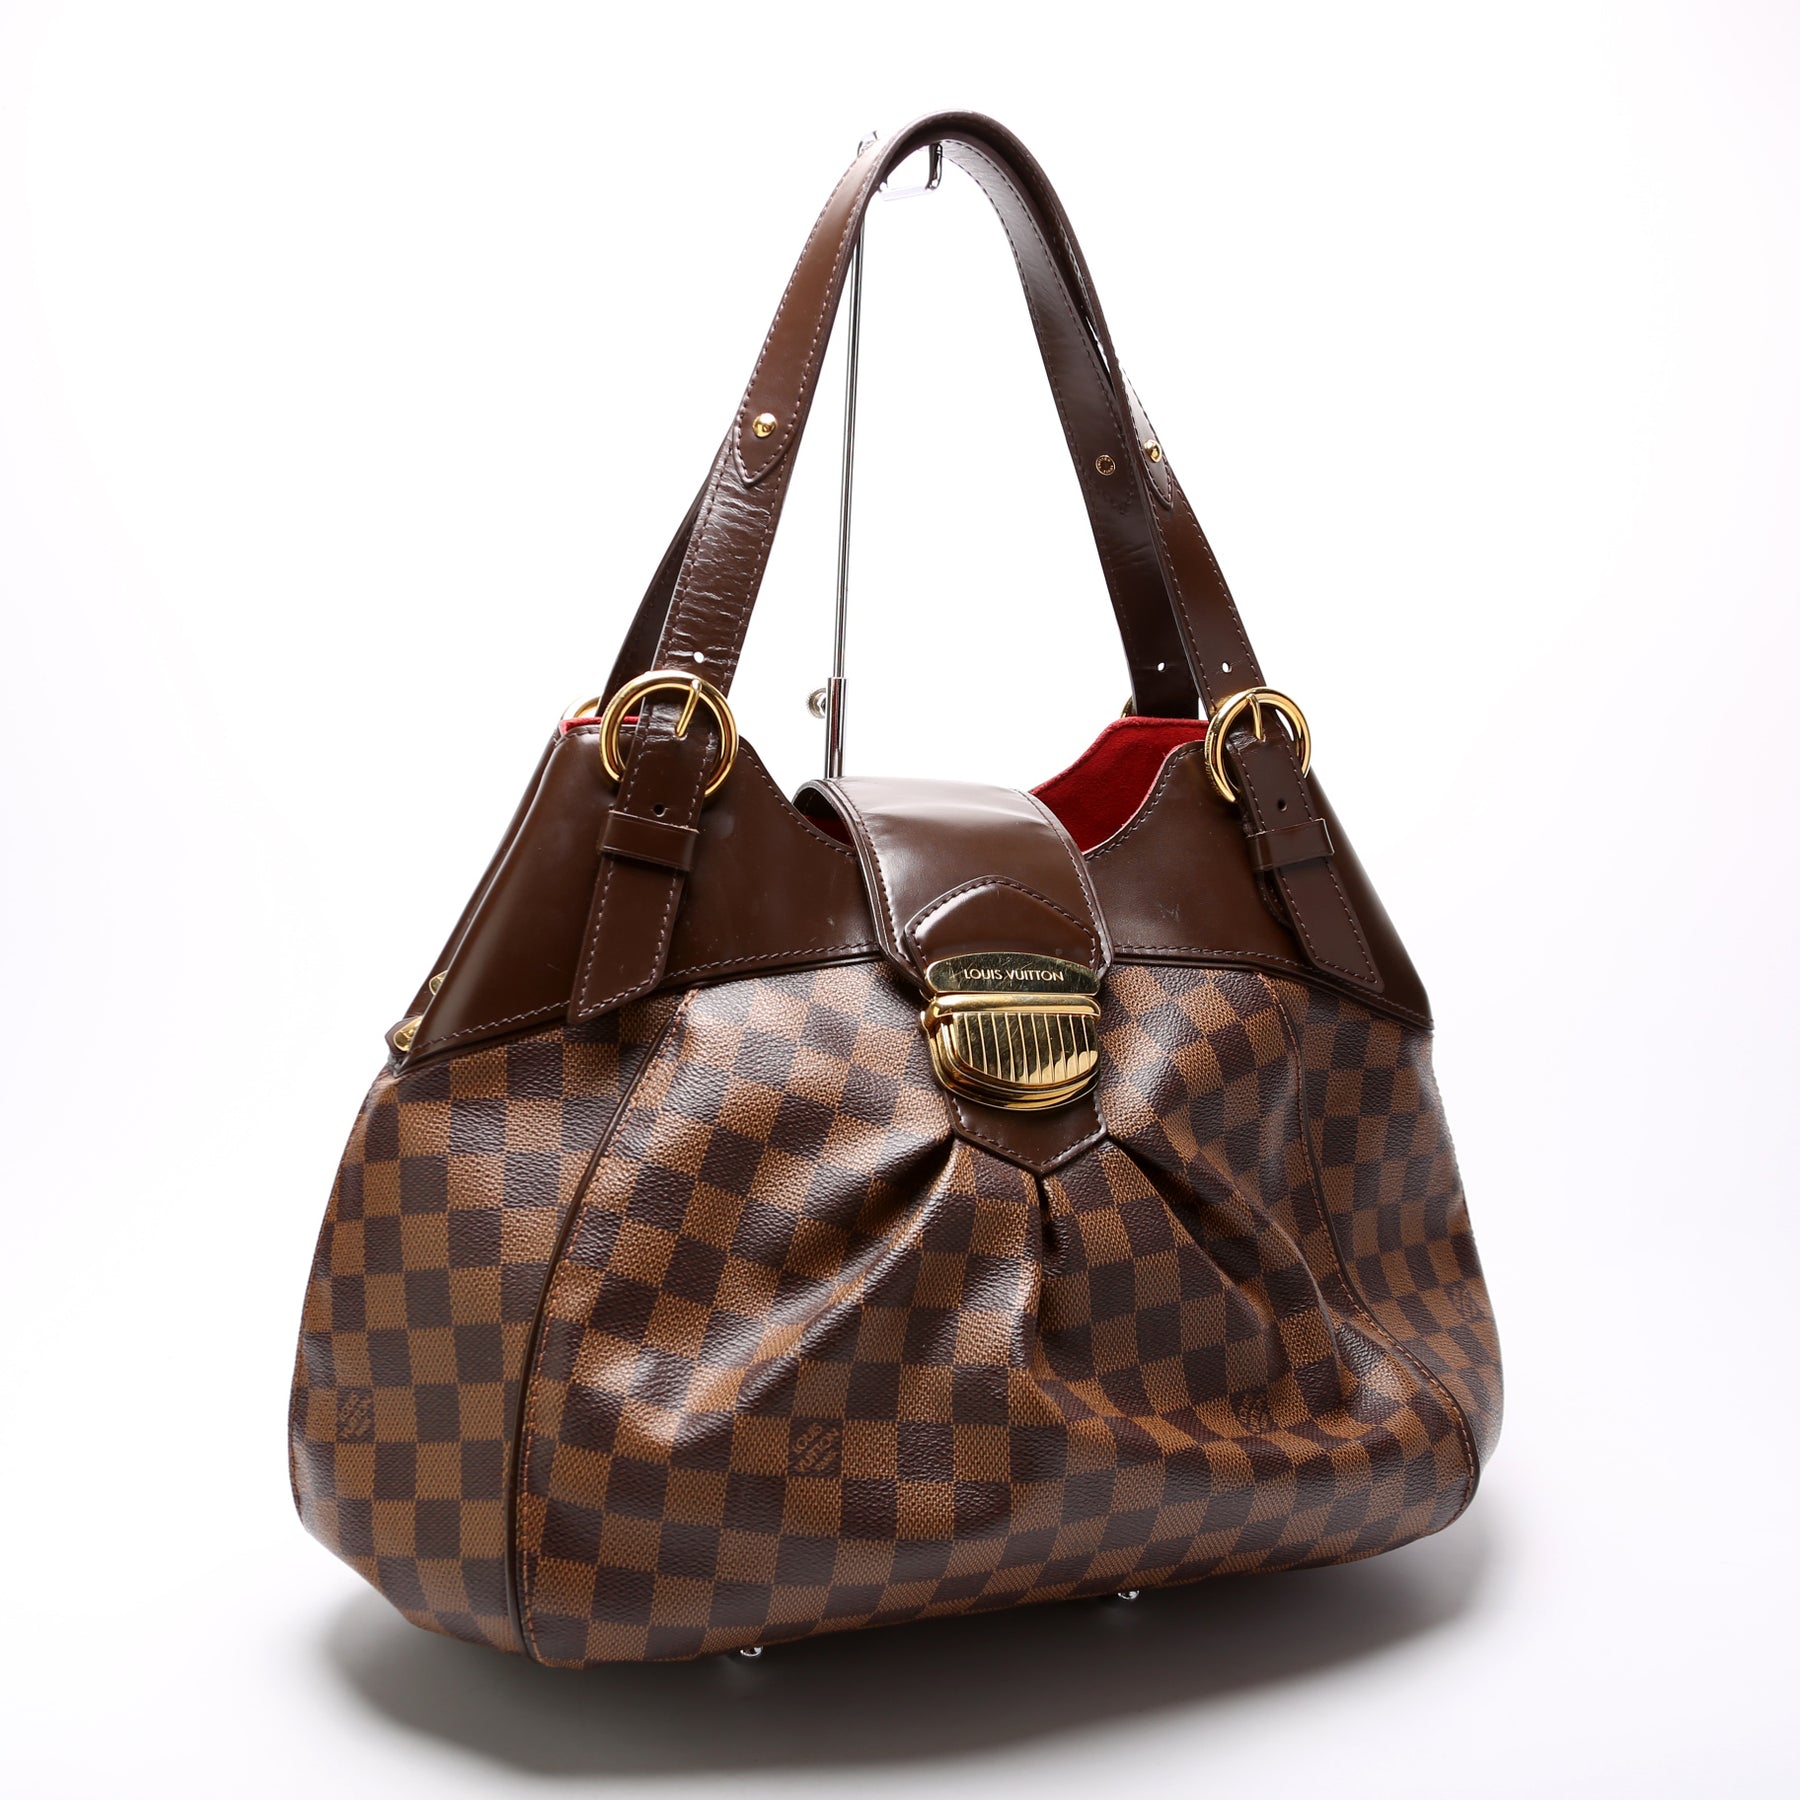 Vintage Louis Vuitton Sistina Shoulder Bag Damier GM Handbag For